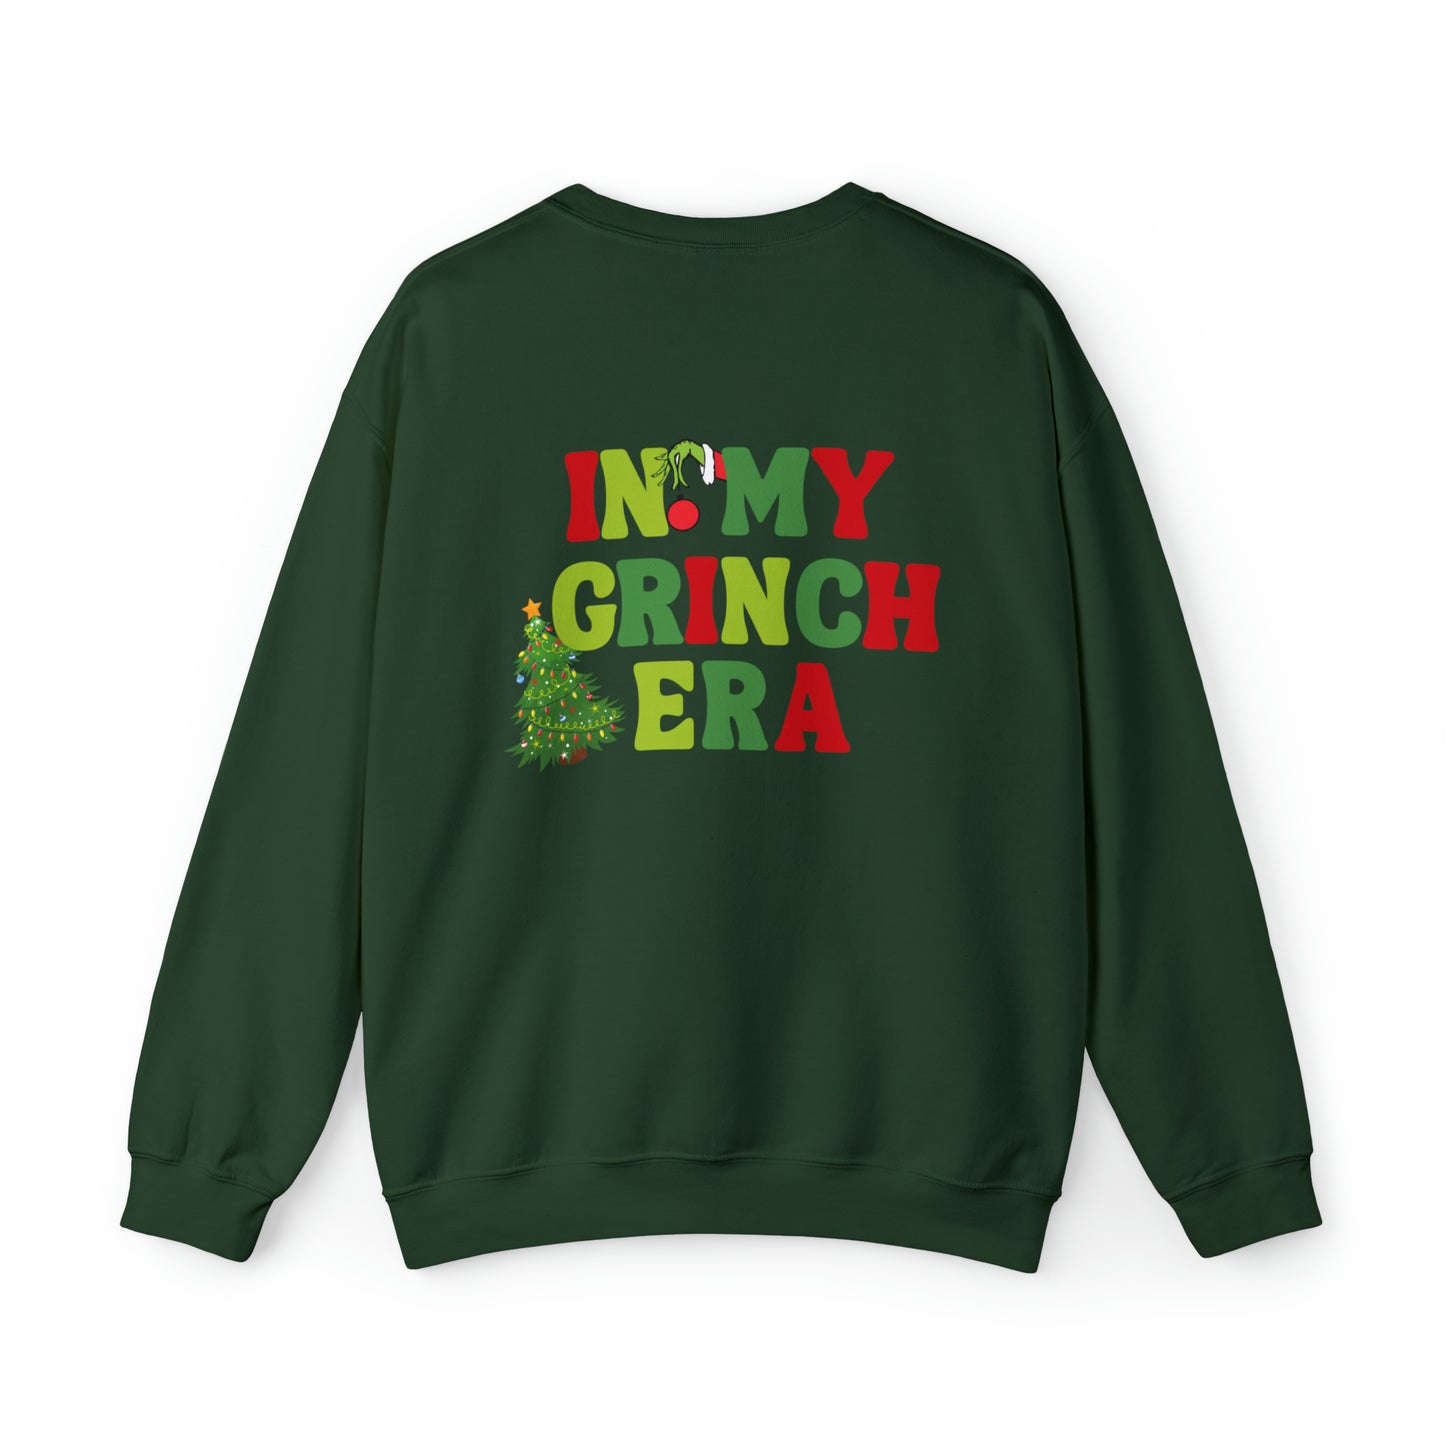 In My Grinch Era Unisex Heavy Blend Crewneck Sweatshirt